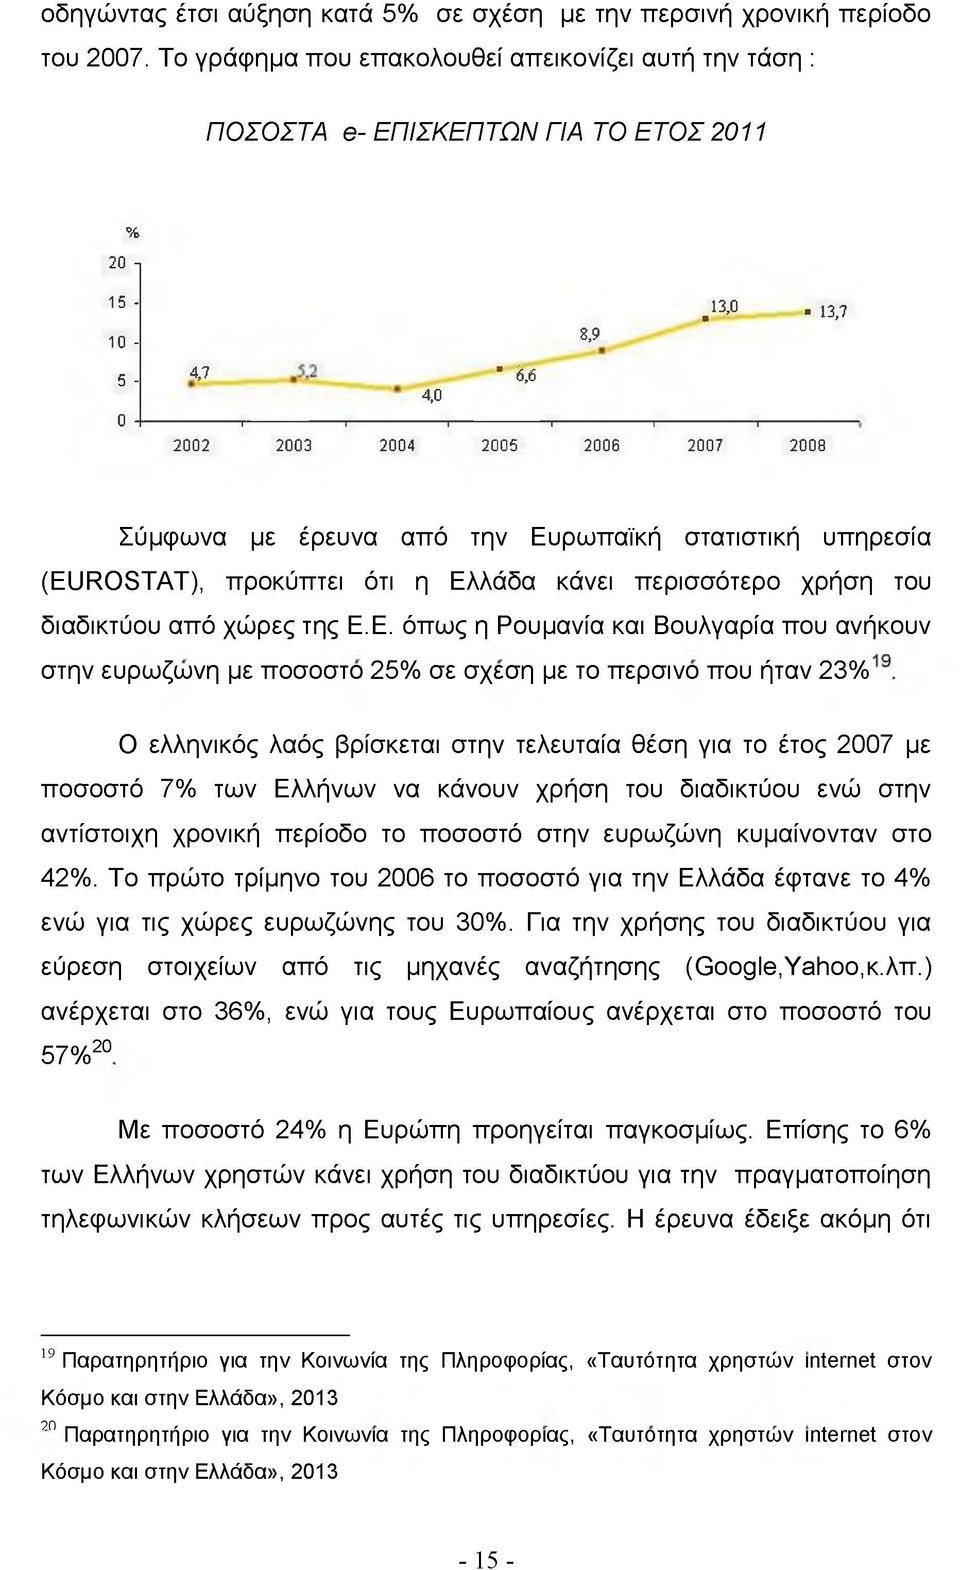 Ευρωπαϊκή στατιστική υπηρεσία (EUROSTAT), προκύπτει ότι η Ελλάδα κάνει περισσότερο χρήση του διαδικτύου από χώρες της Ε.Ε. όπως η Ρουμανία και Βουλγαρία που ανήκουν στην ευρωζώνη με ποσοστό 25% σε